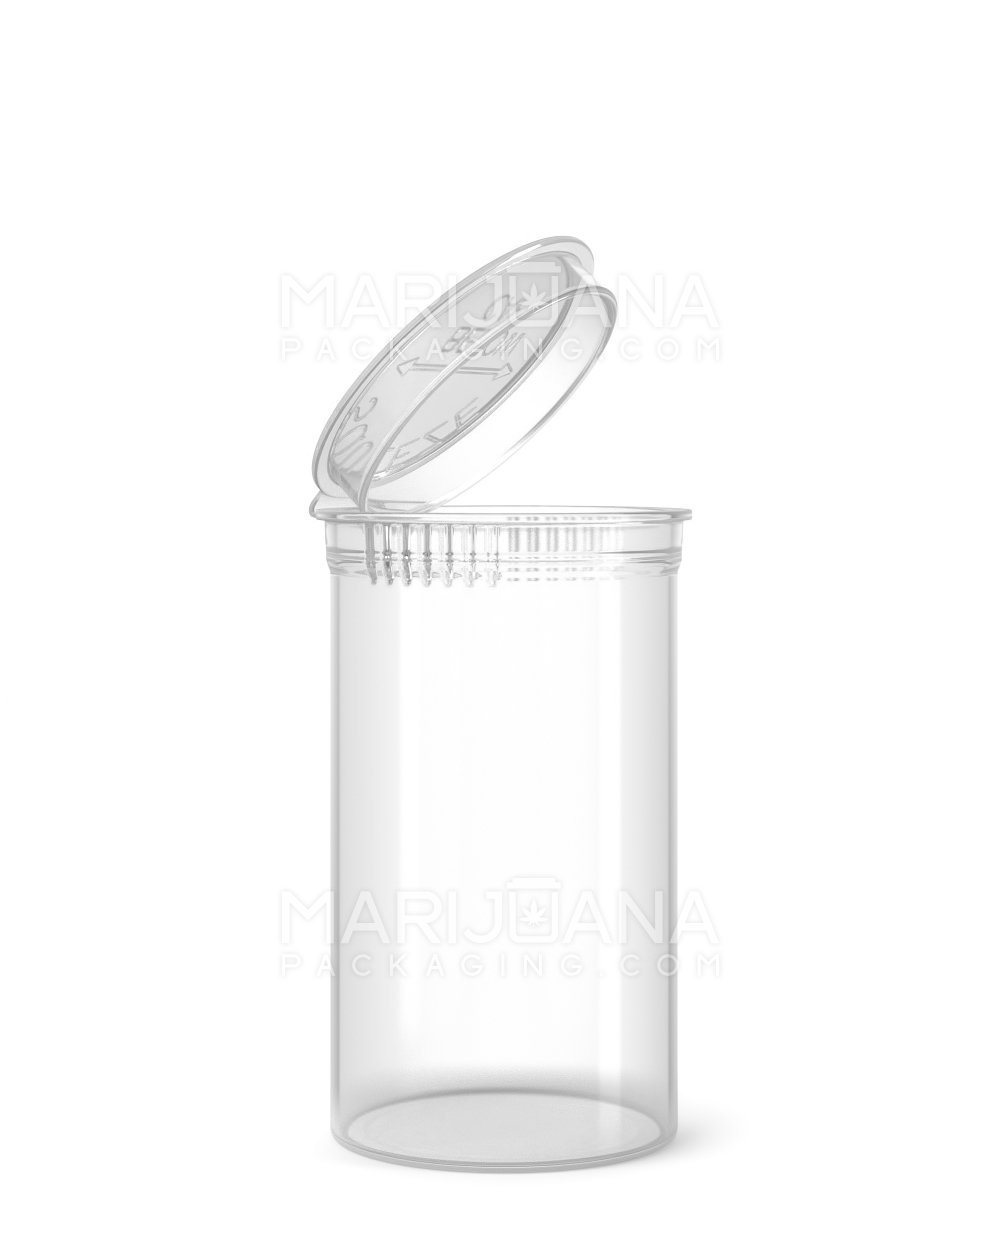 Child Resistant Clear Pop Top Bottles | 19dr - 3.5g | Sample - 1